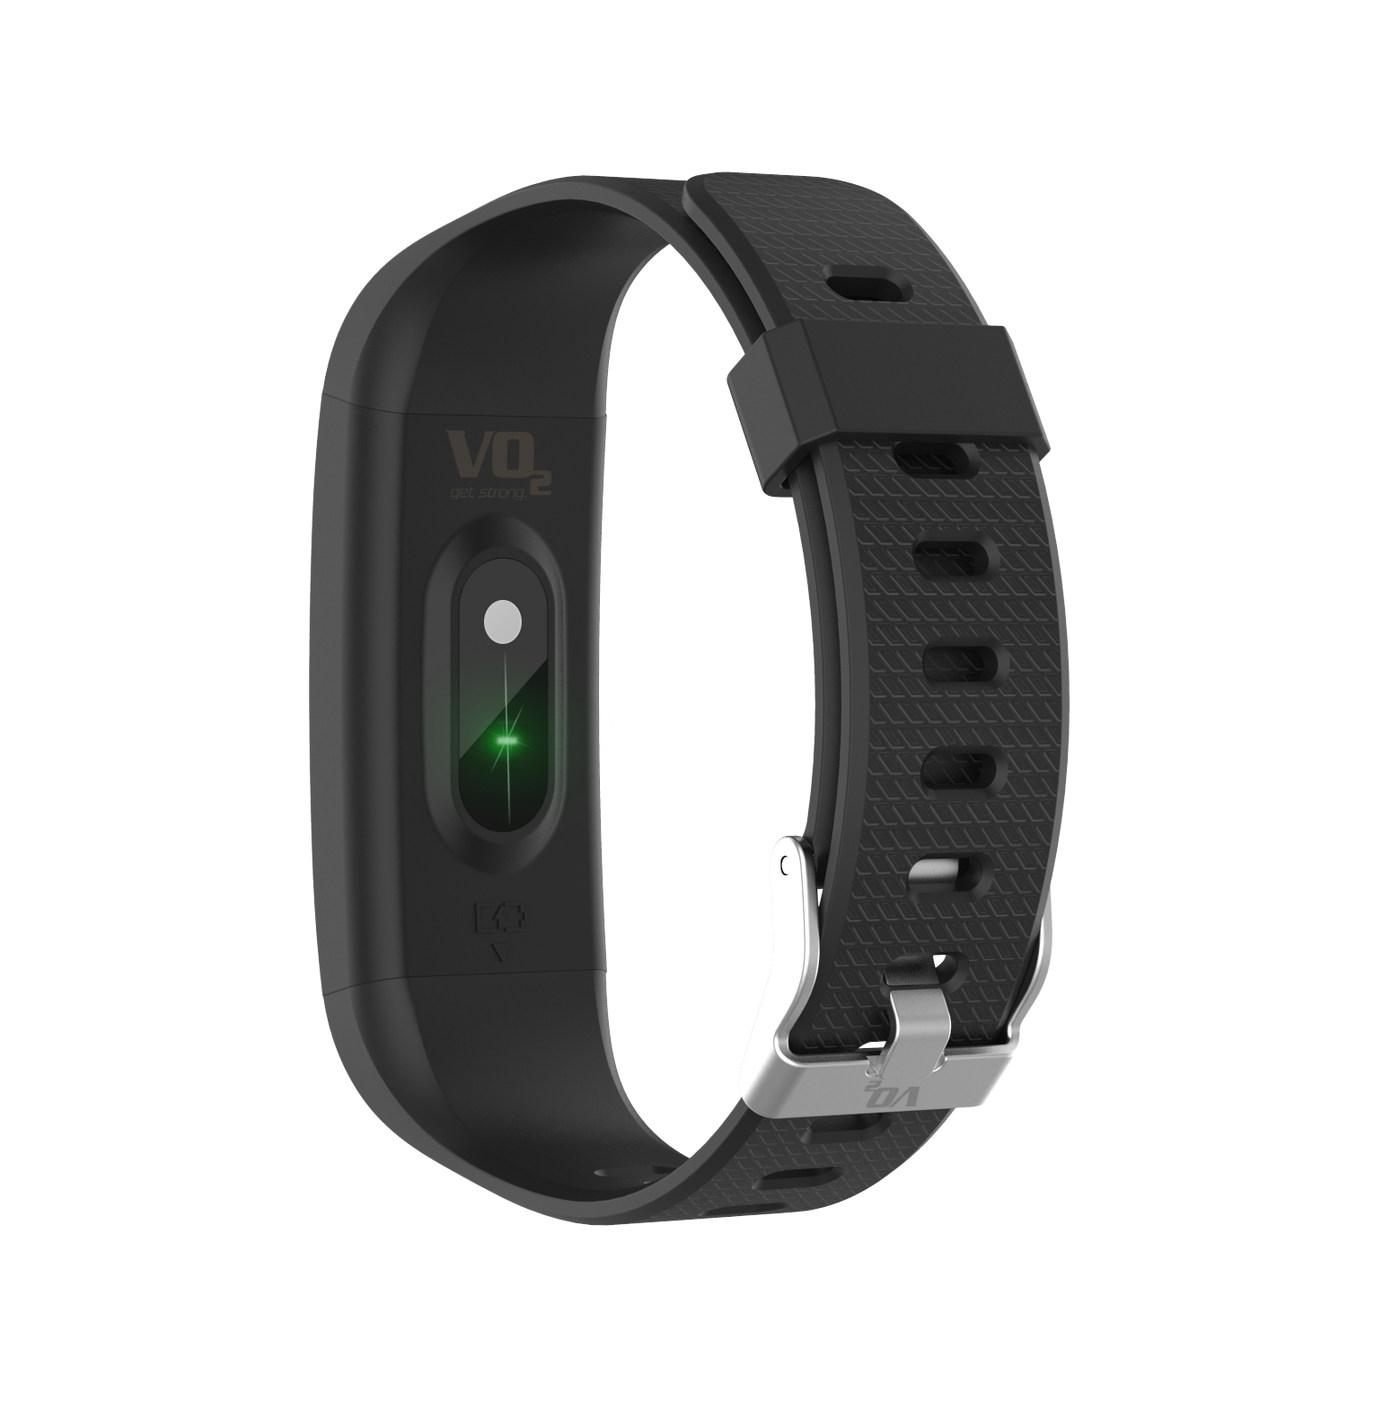 שעון כושר Smart VO2 עם מד טמפרטורה בצבע שחור